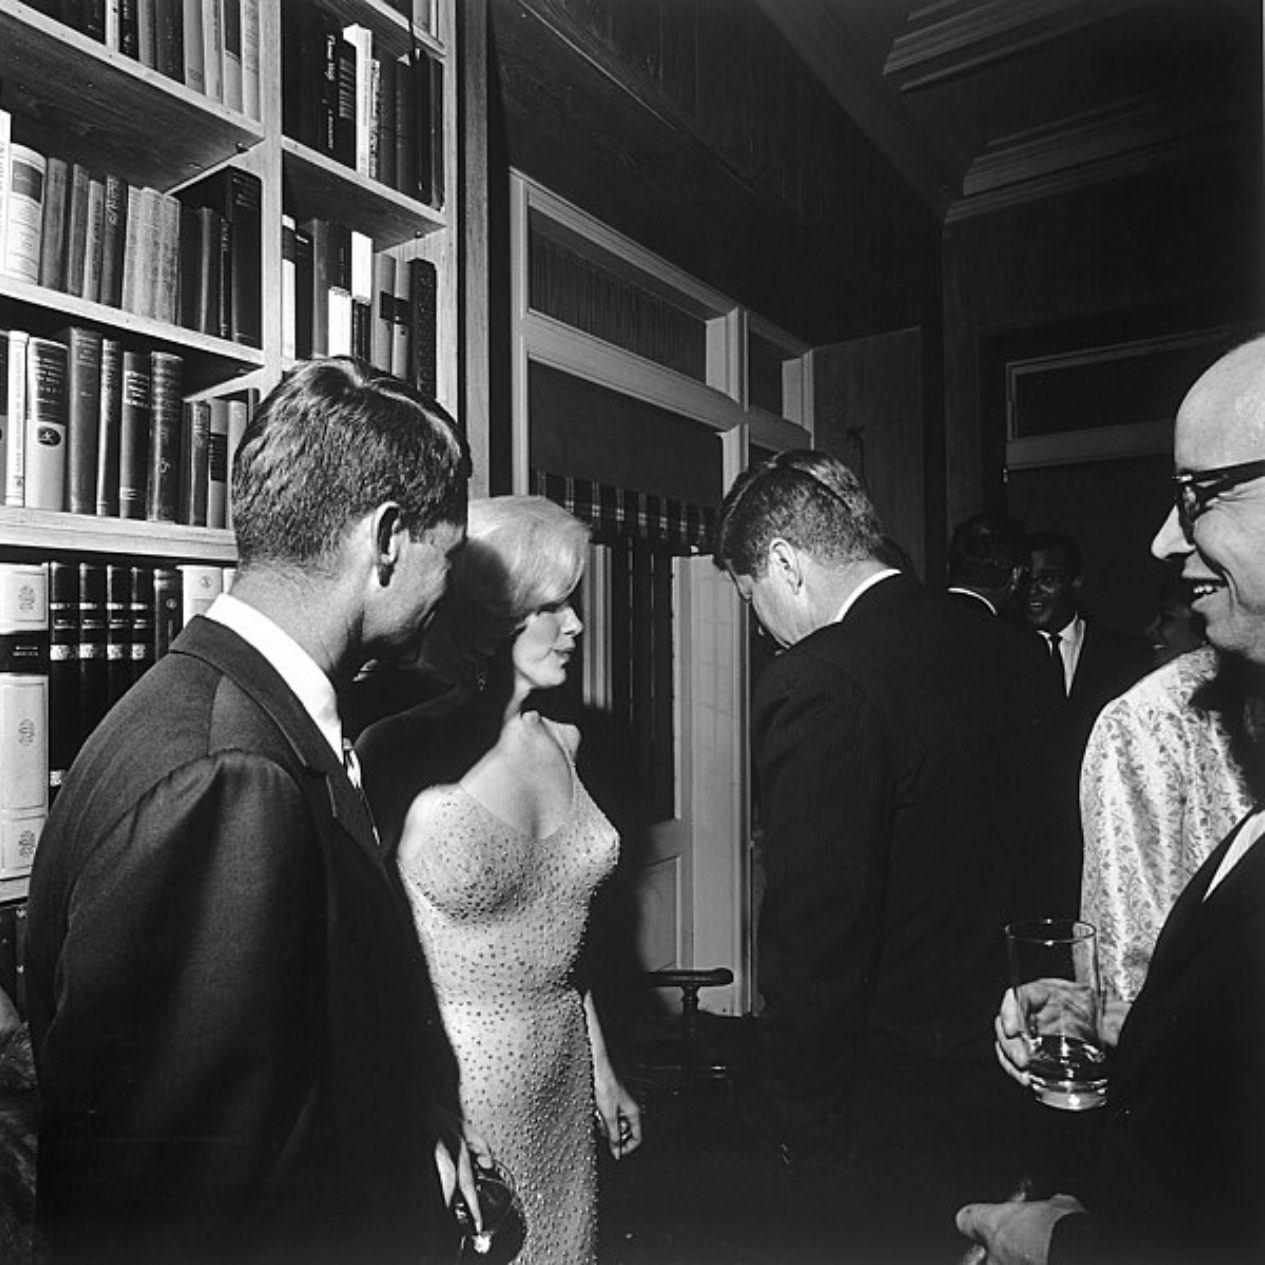 Rara fotografia em que é possível ver Marilyn Monroe e John F. Kennedy juntos